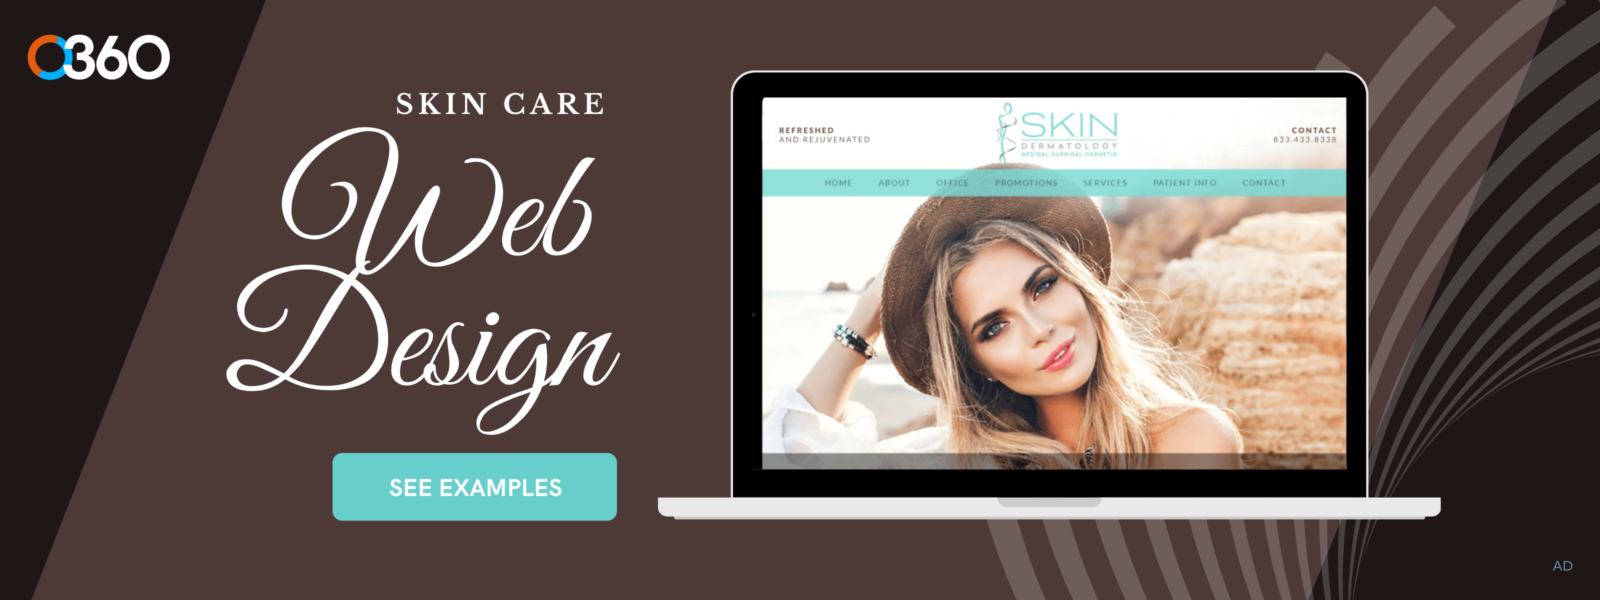 O360 Ad – Skin Care Web Design